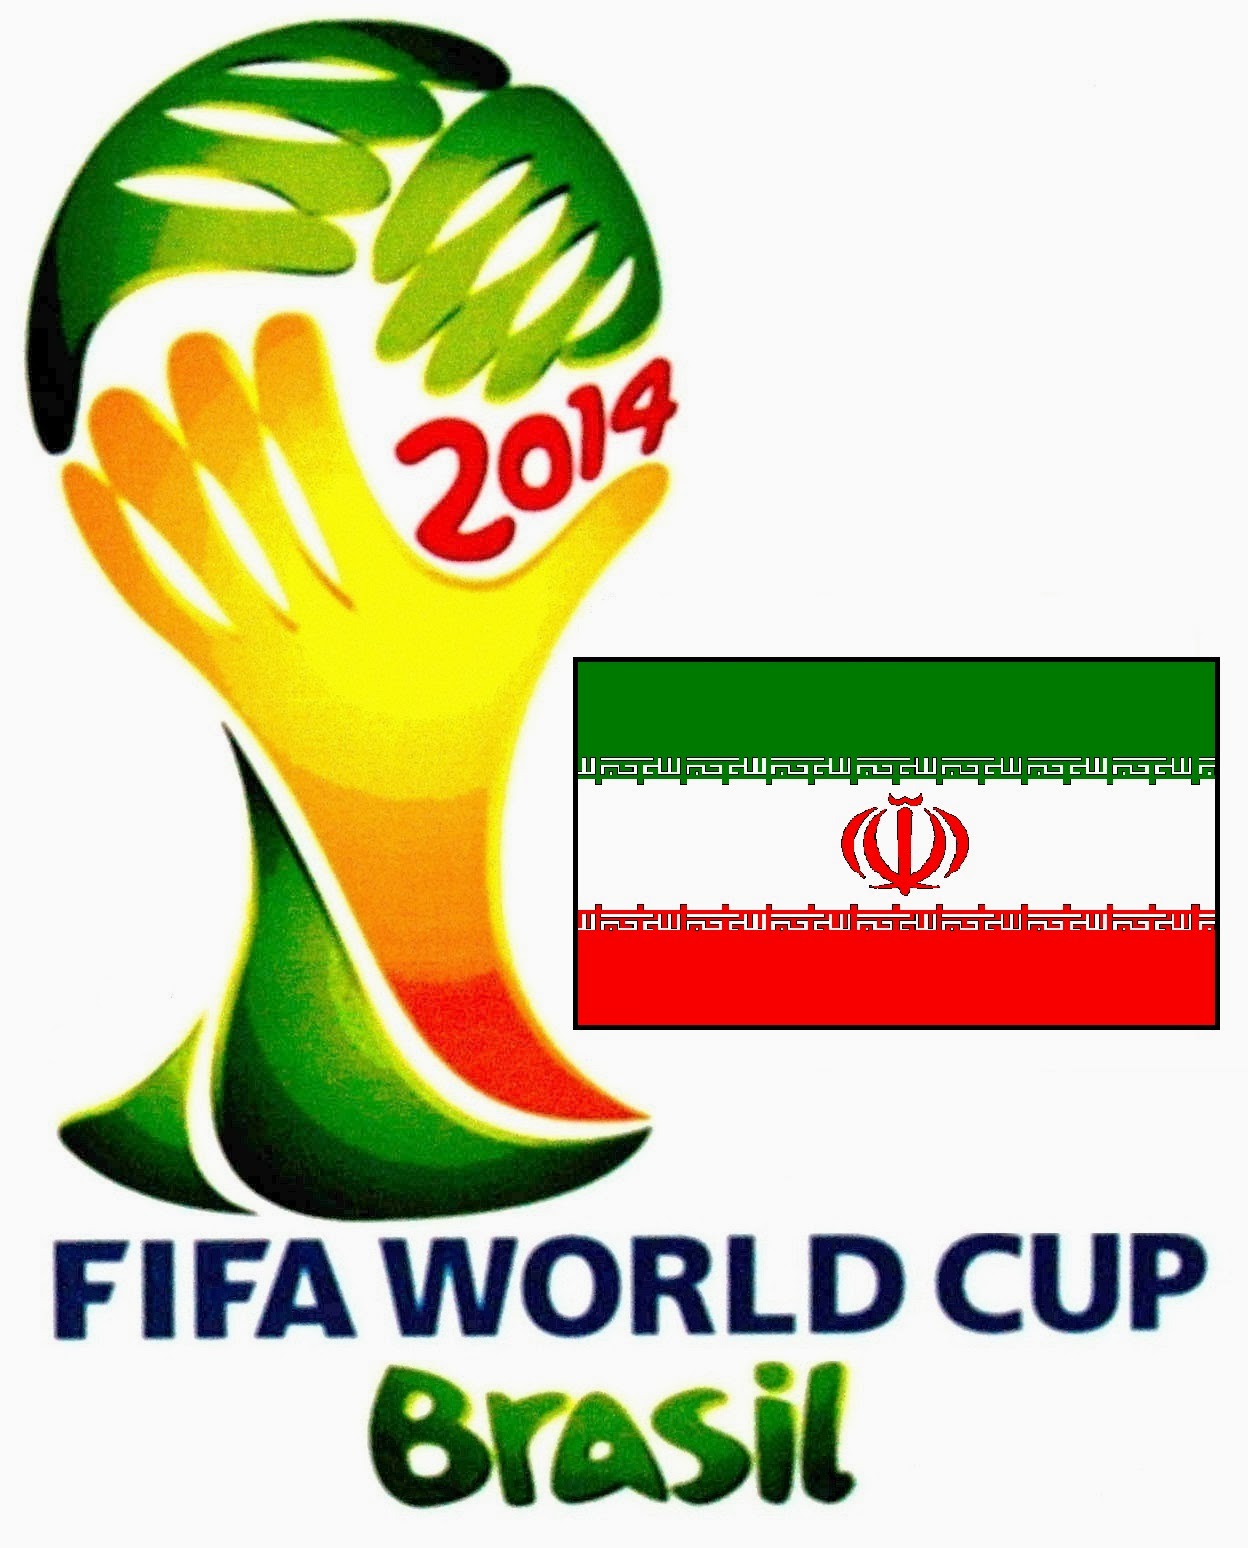 Daftar Nama Pemain Timnas Iran Piala Dunia 2014